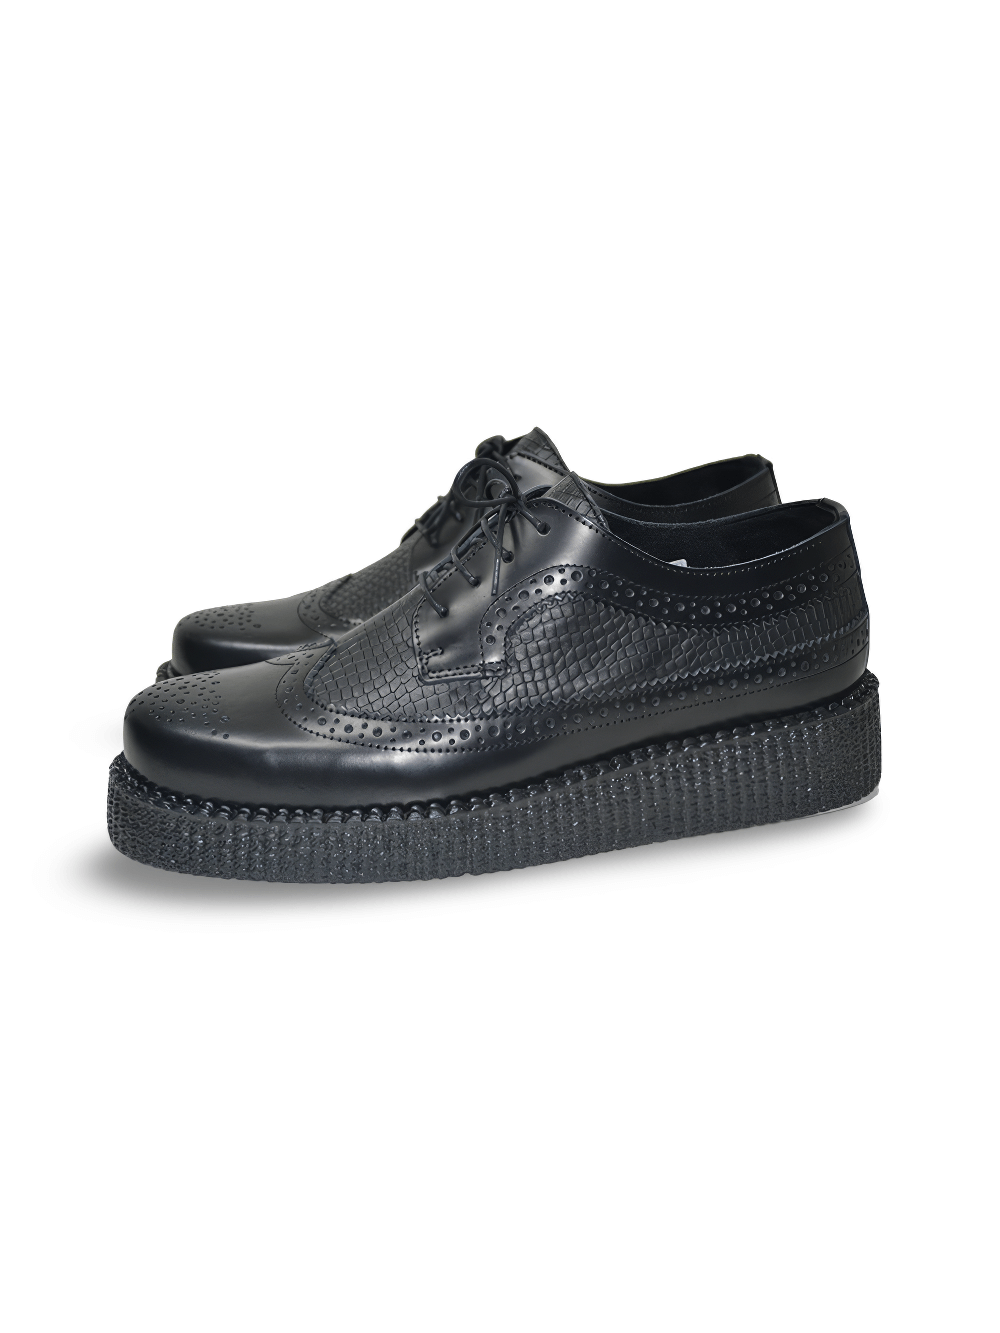 Unisex-Derby-Schuhe aus schwarzem Leder zum Schnüren mit Gummisohle